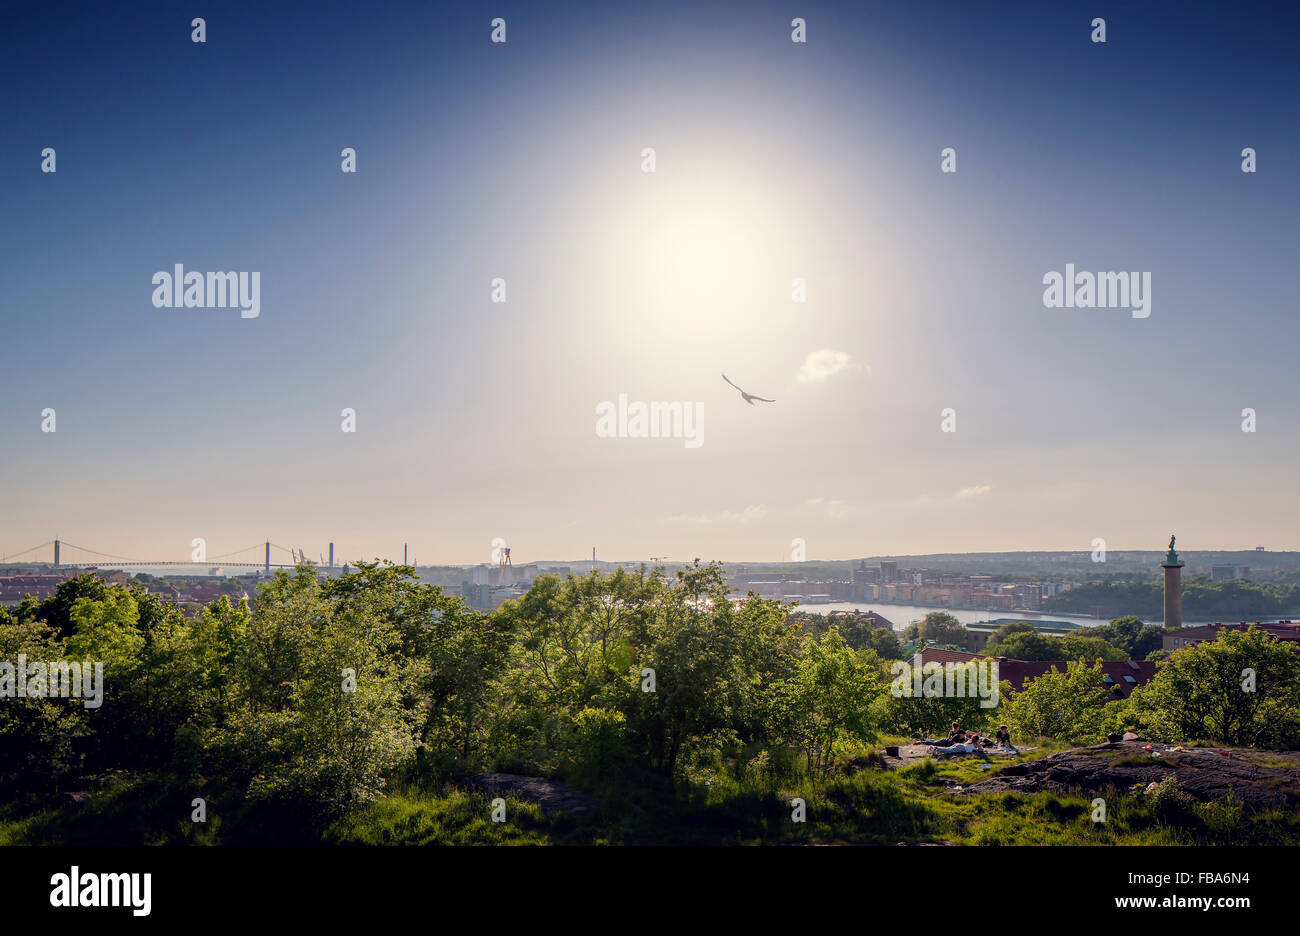 Sweden, Vastra Gotaland, Gothenburg, Masthugget, Cityscape with trees Stock Photo